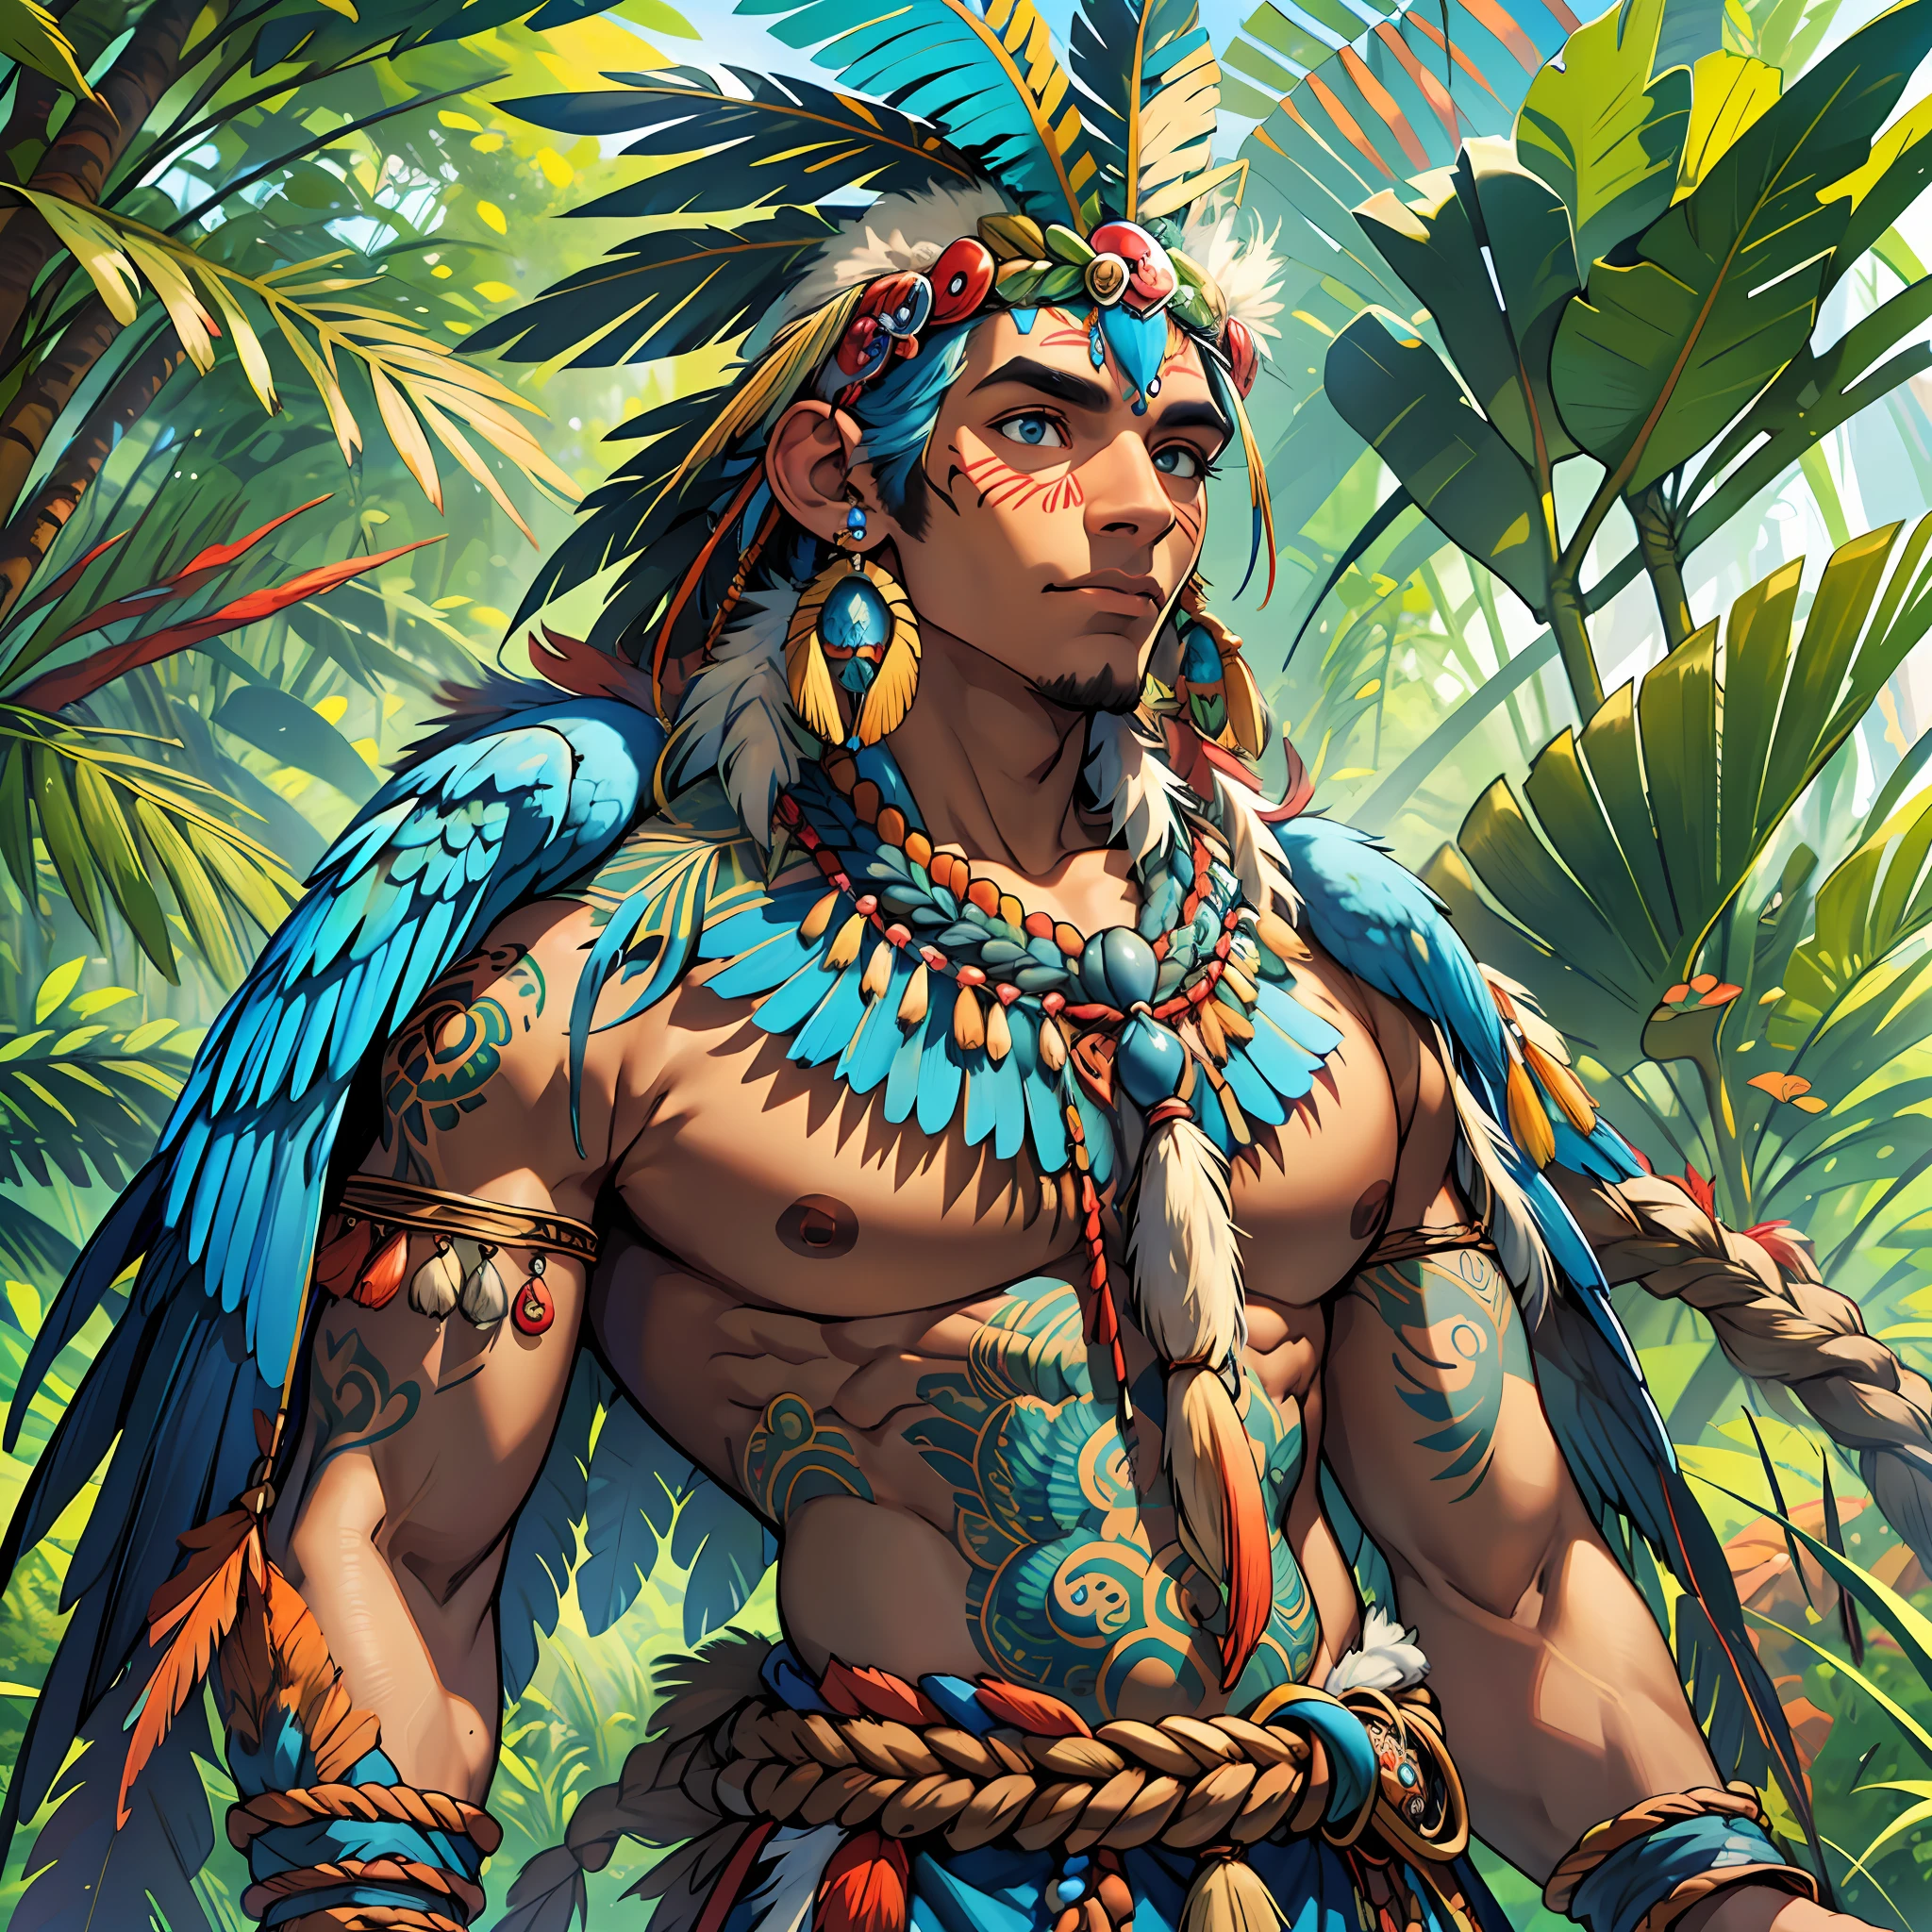 Dios humanoide antropozoomorfo piel marrón nativa con alas de guacamaya azul y cuerpo humano y algunas plumas de guacamaya azul en el cuerpo, cuerpo perfecto, guardián sagrado del bosque, brasileño, paisaje divino amazónico, ropa tupi guaraní